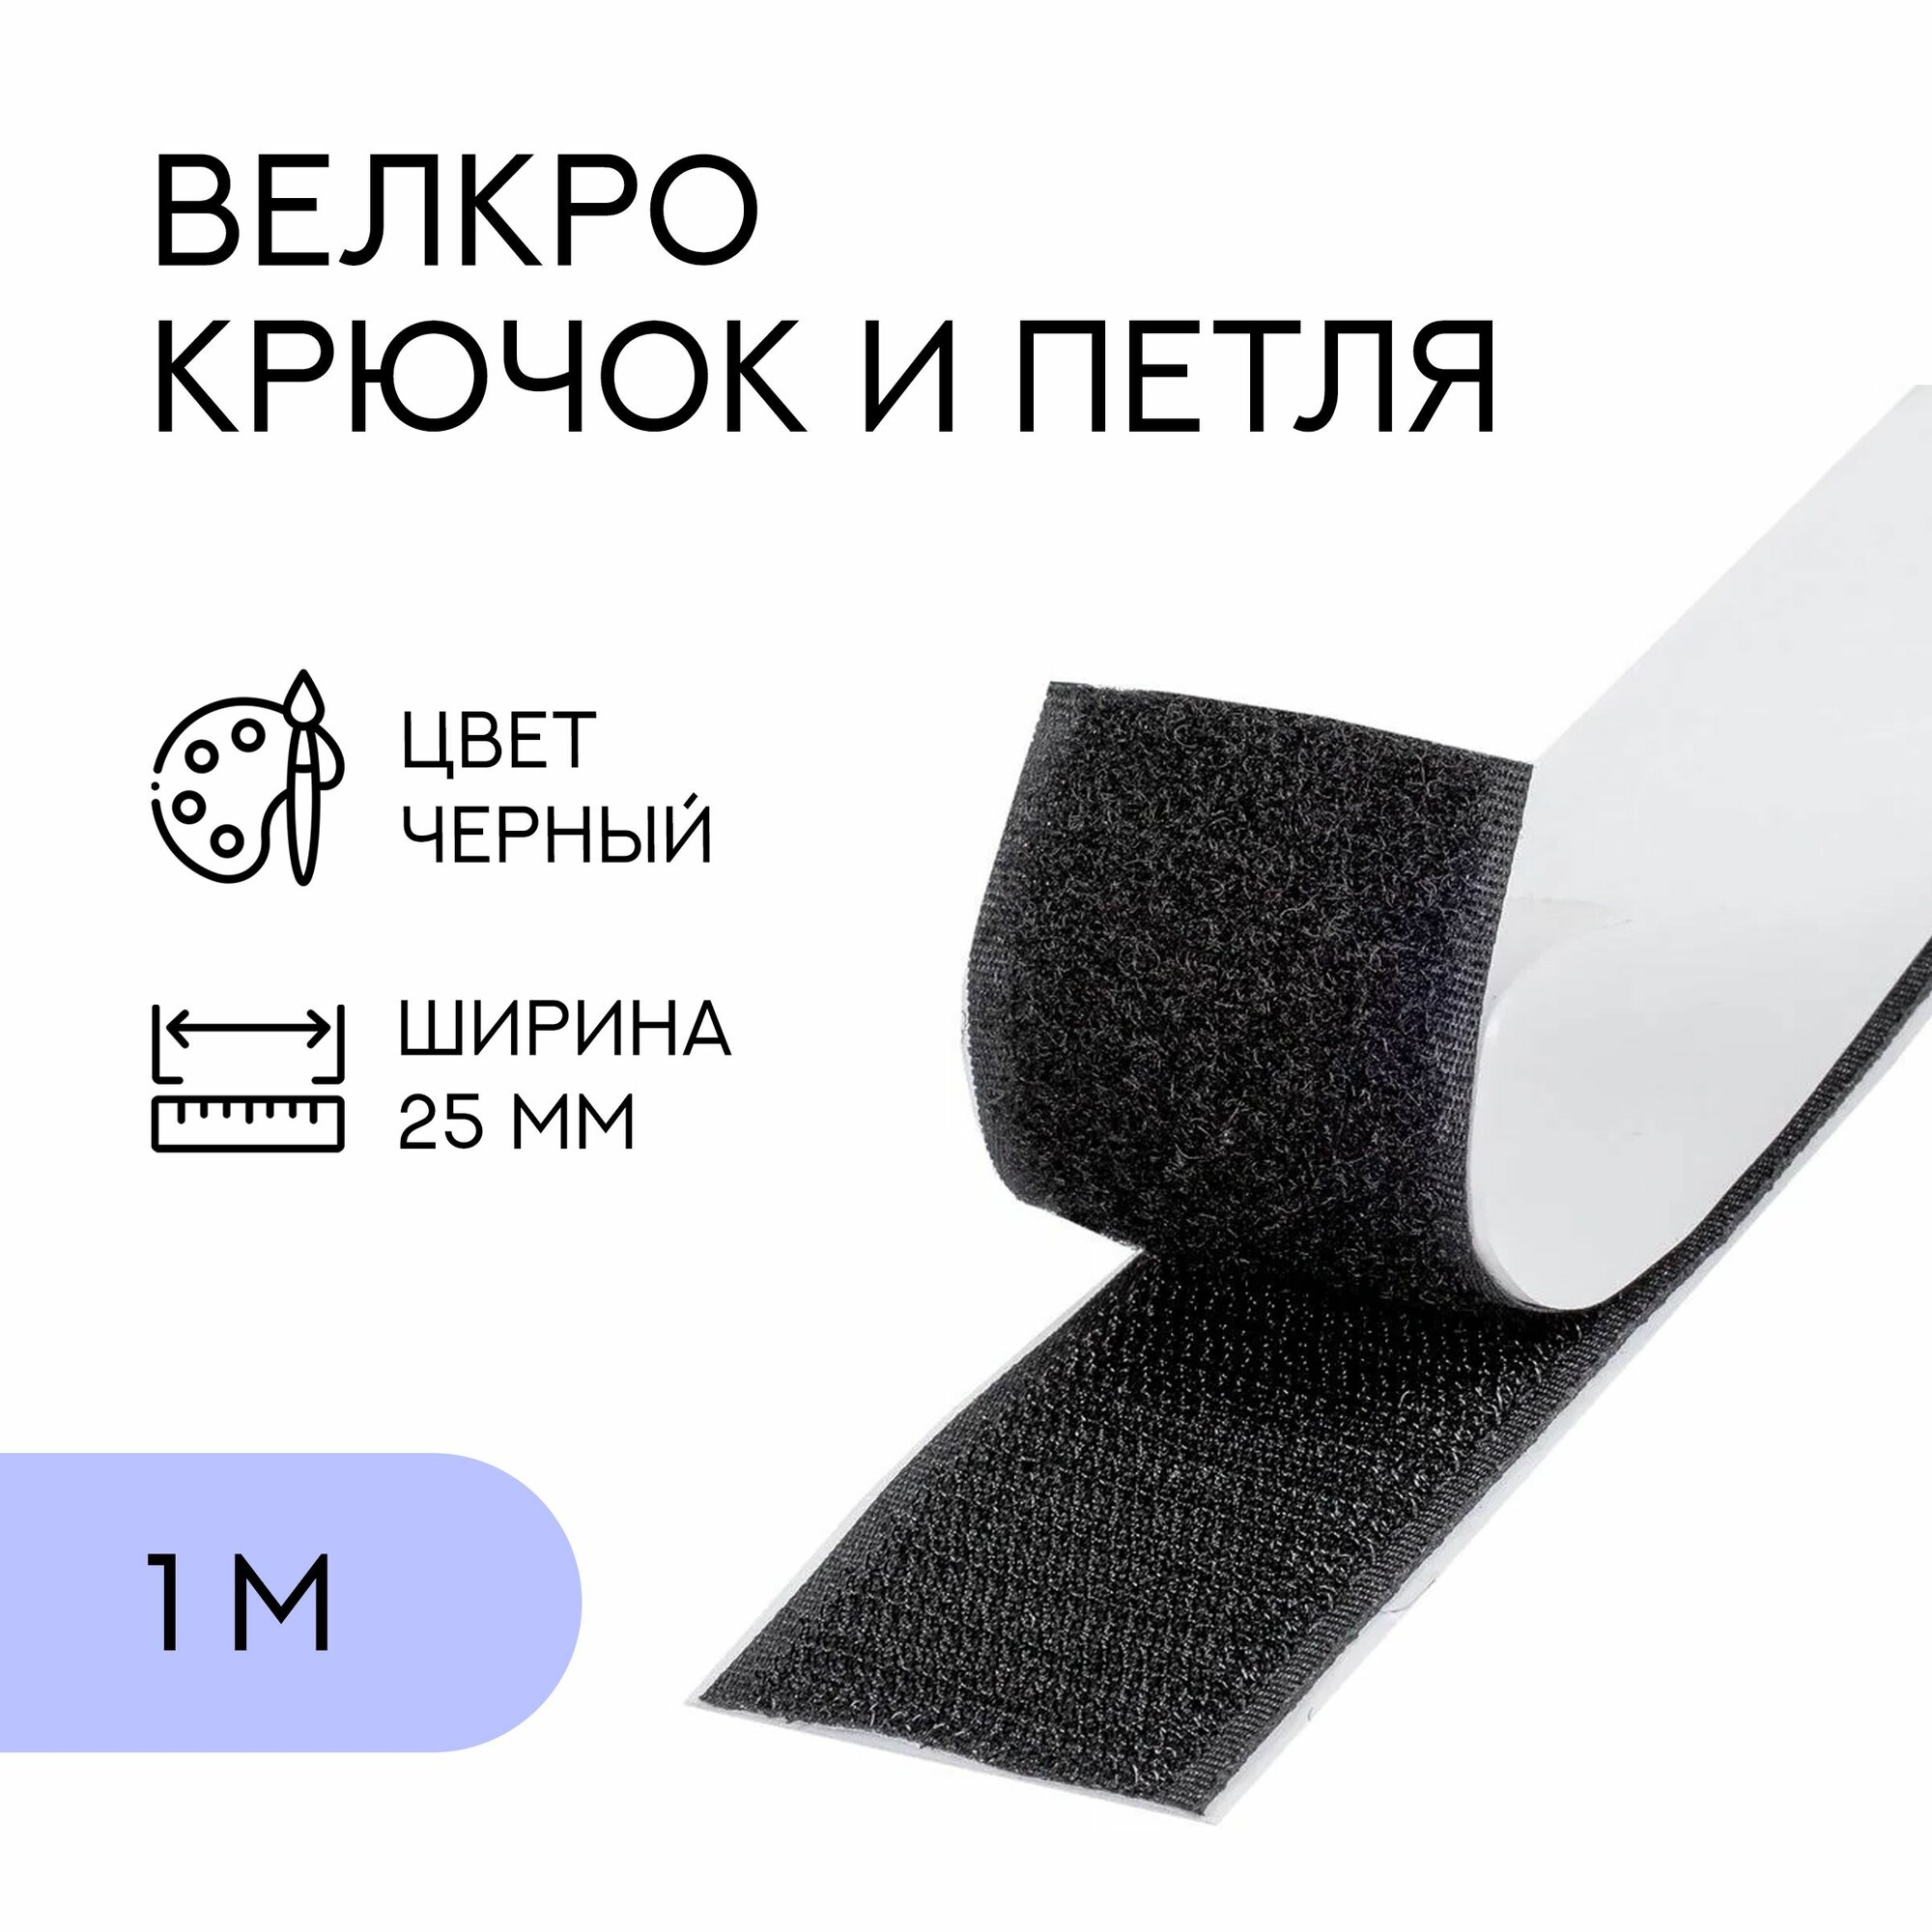 Велкро комплект (петля и крючок) с липким слоем / лента контактная липучка, 25 мм, черный, 1 м